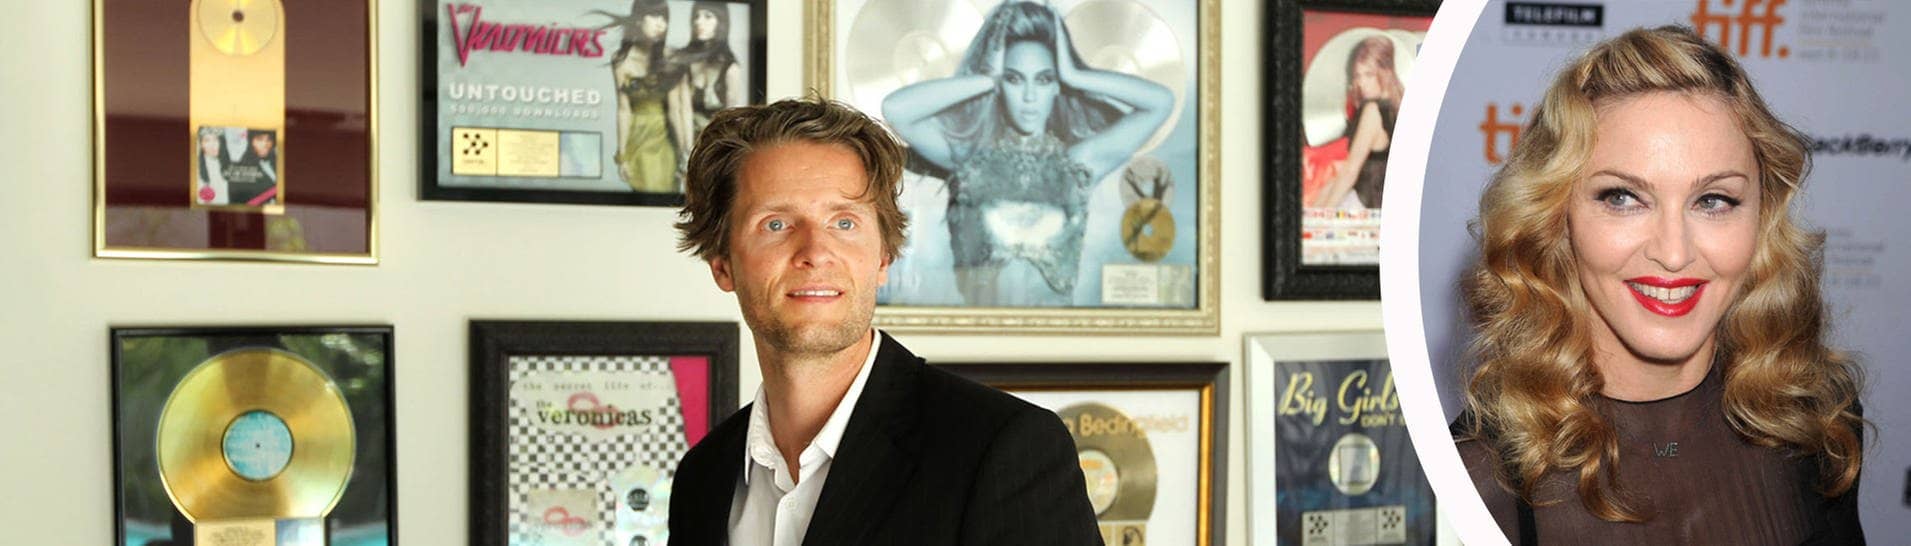 Der deutsche Songwriter Toby Gad und die Sängerin Madonna